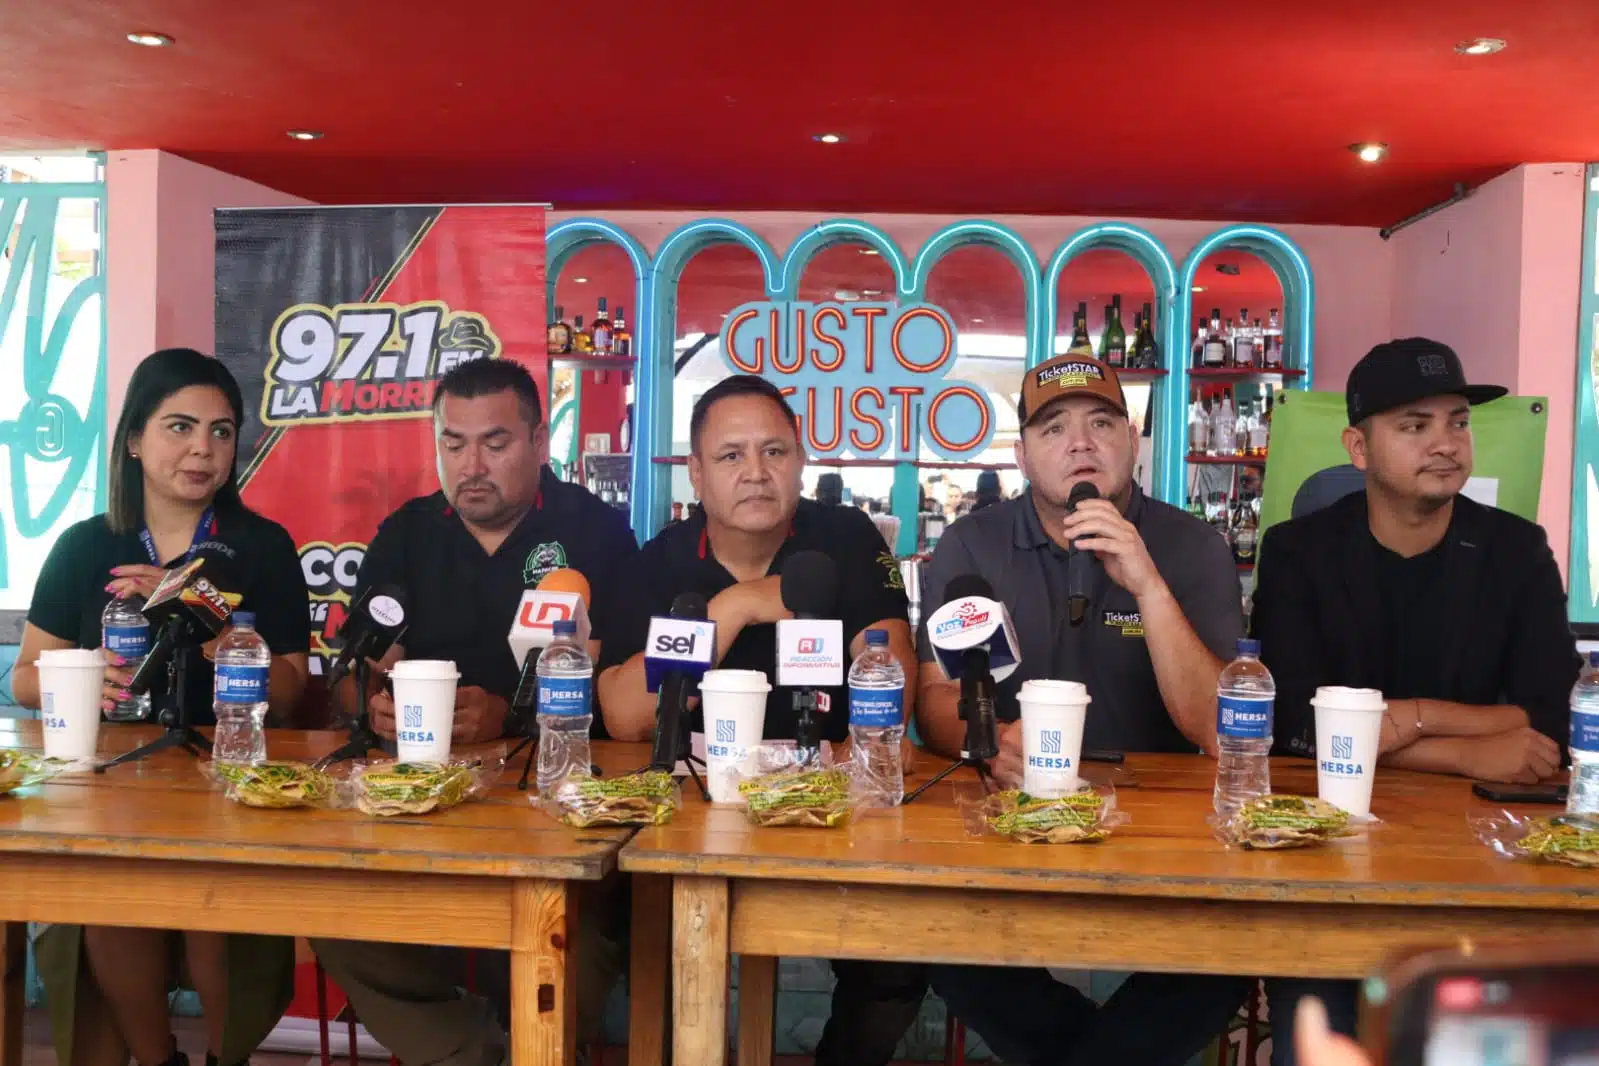 Conferencia de prensa que promociona que estará el Grupo Marca Registrada en Mazatlán